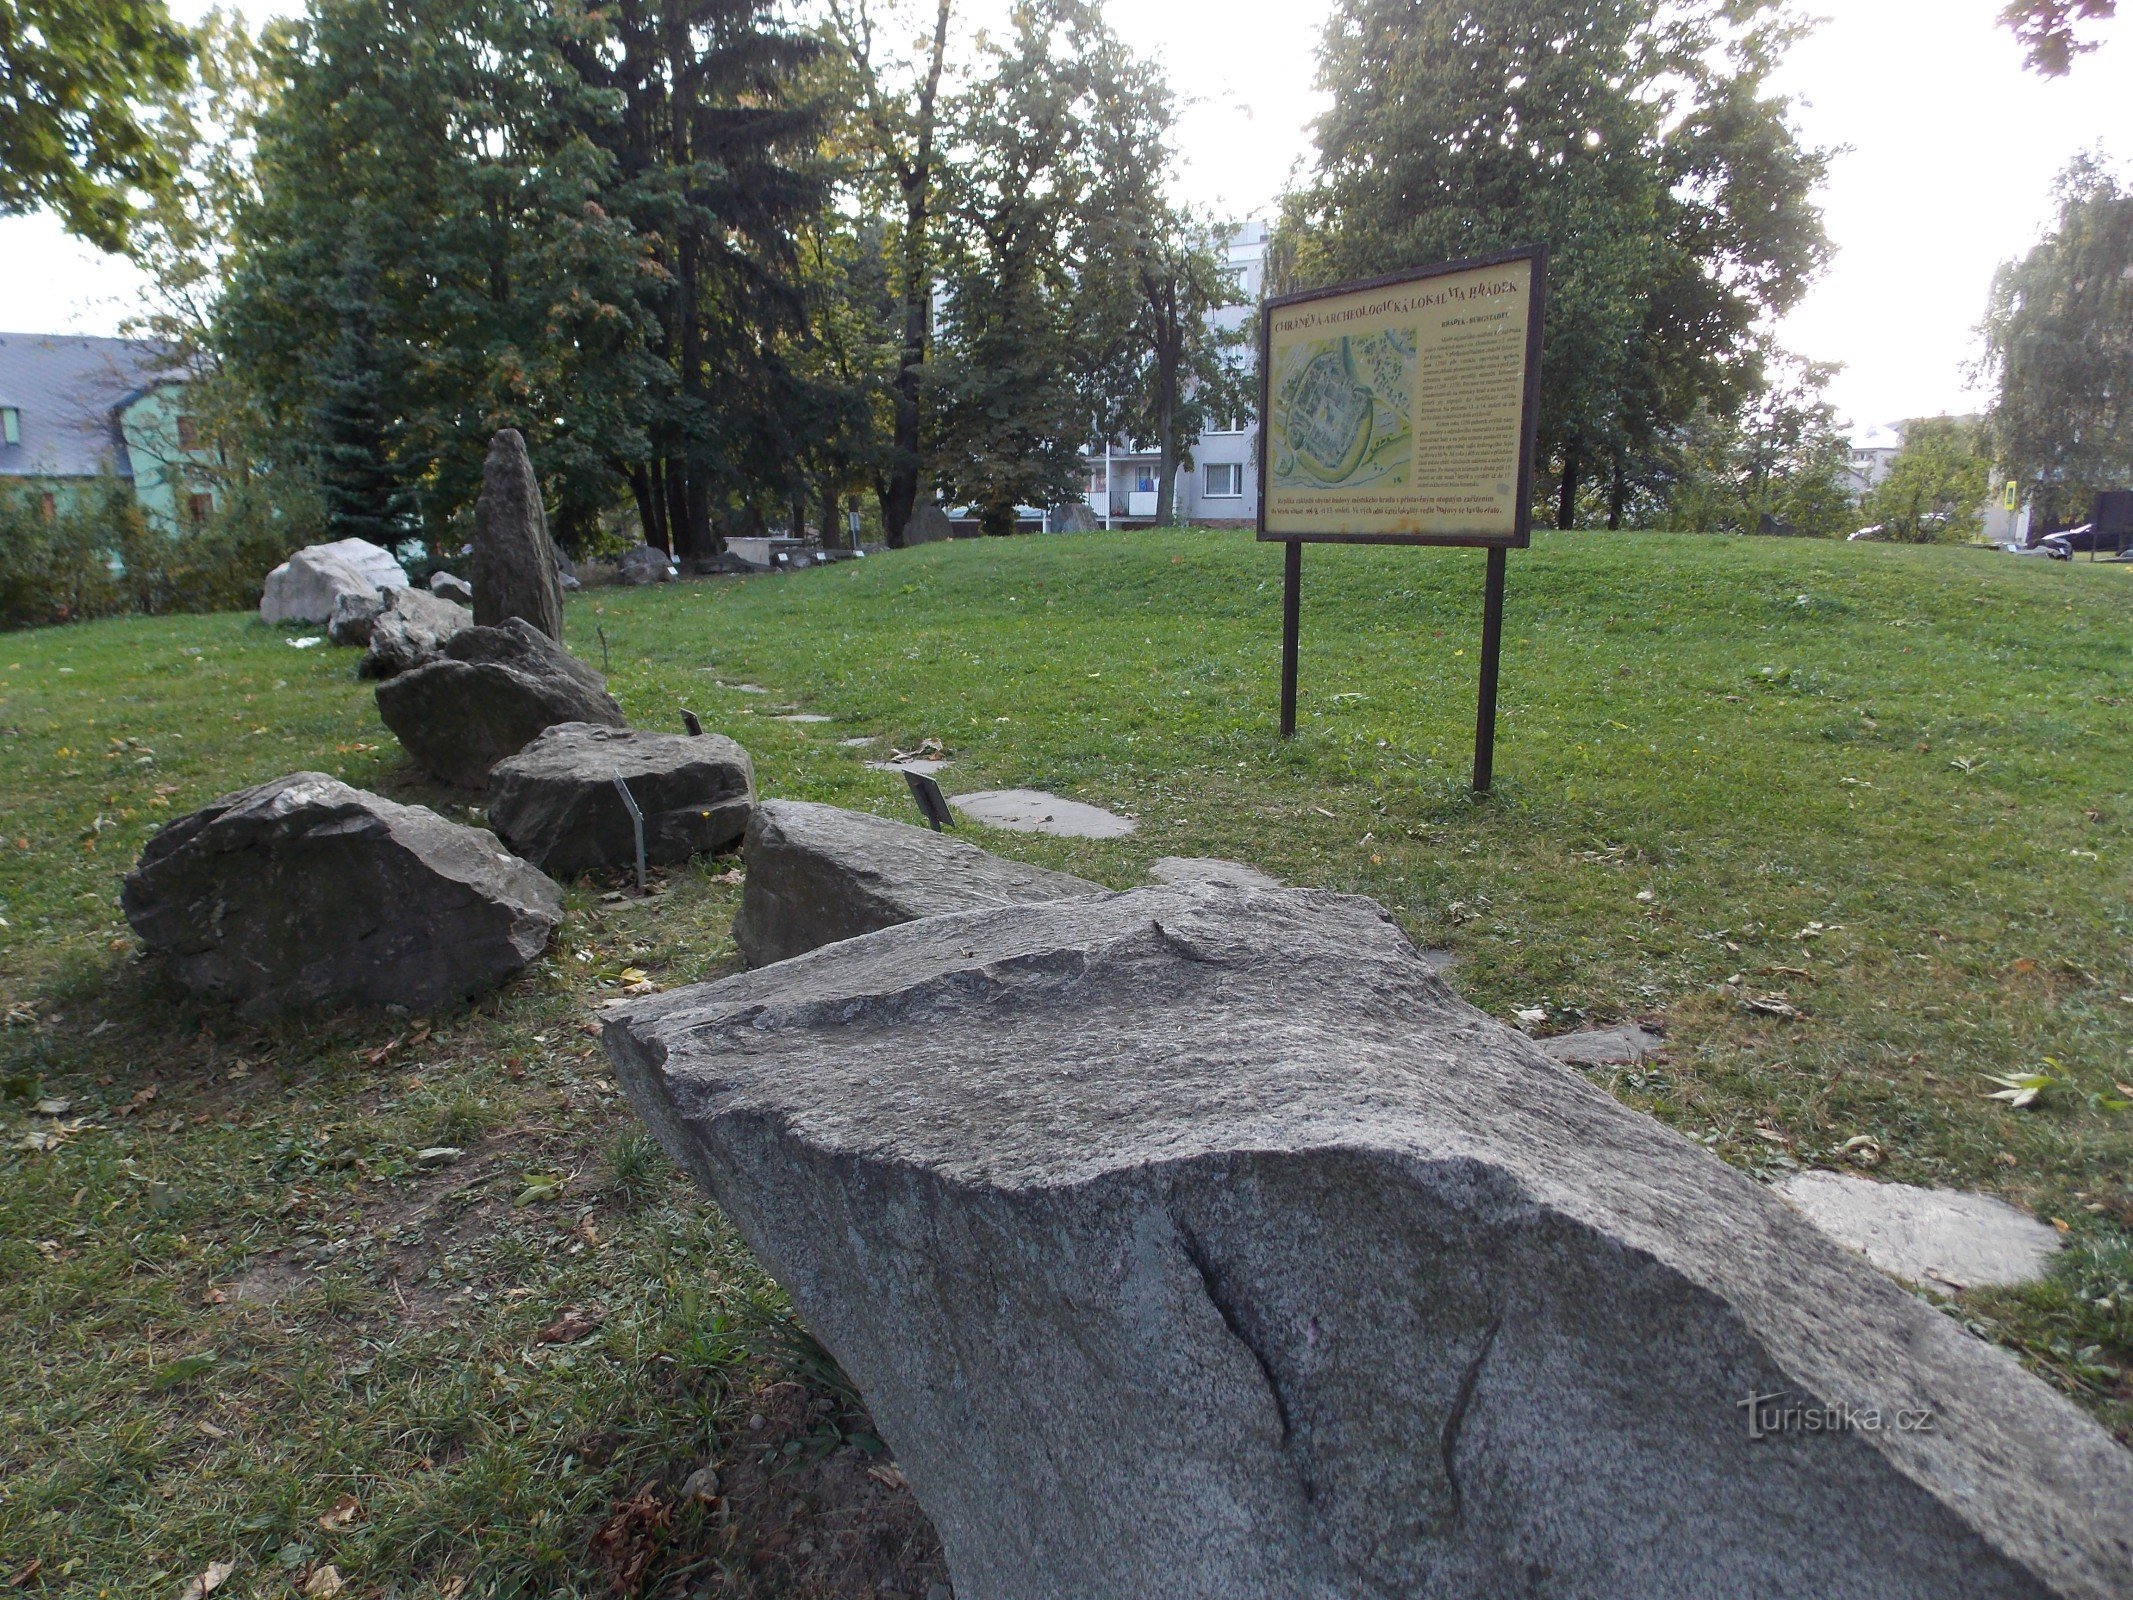 The archaeological site Hrádek in Rýmařov